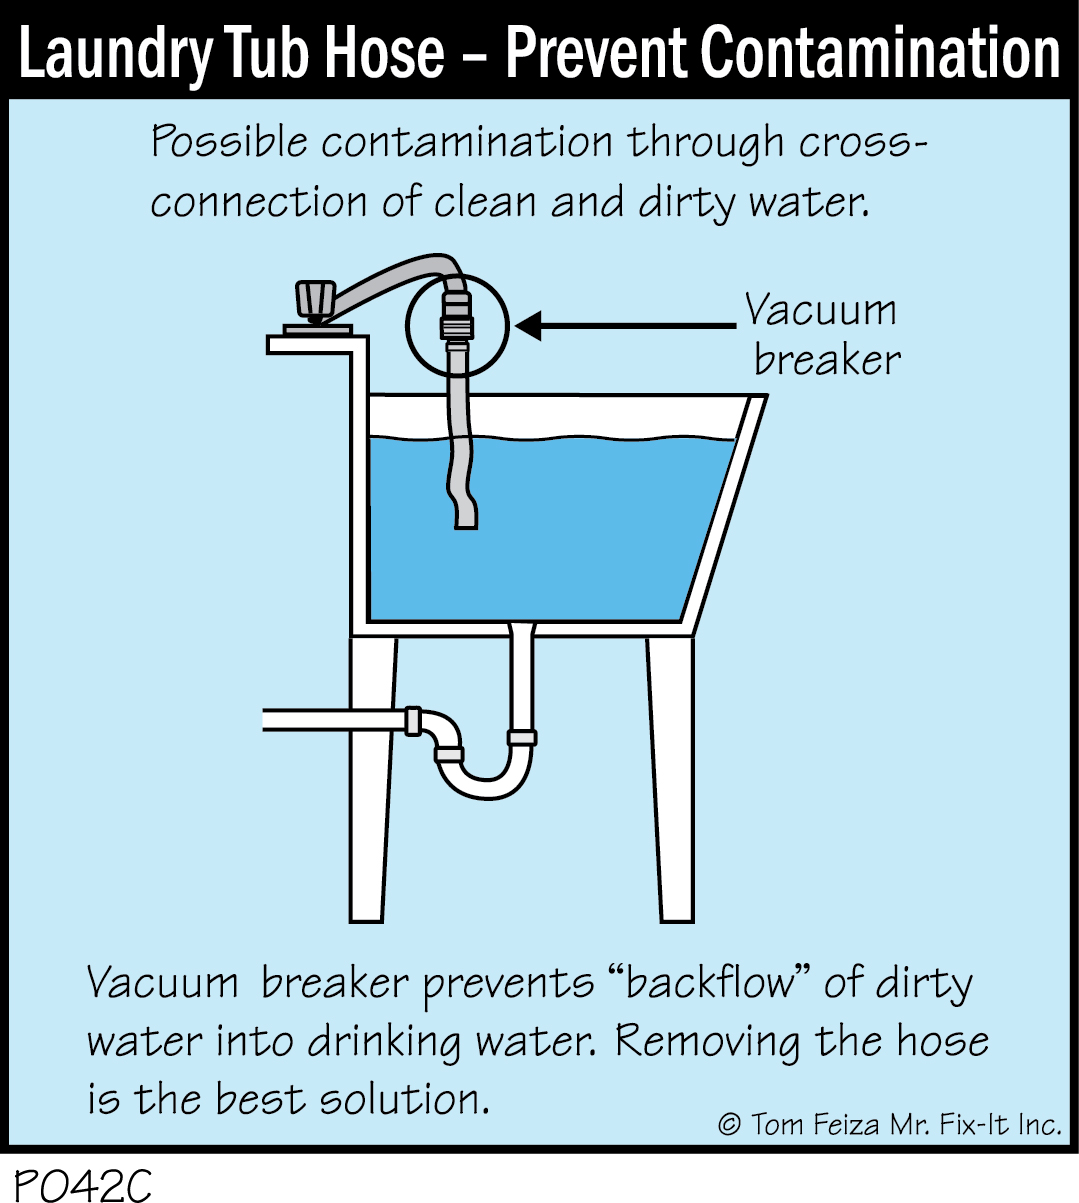 P042C - Laundry Tub Hose, Prevent Contamination